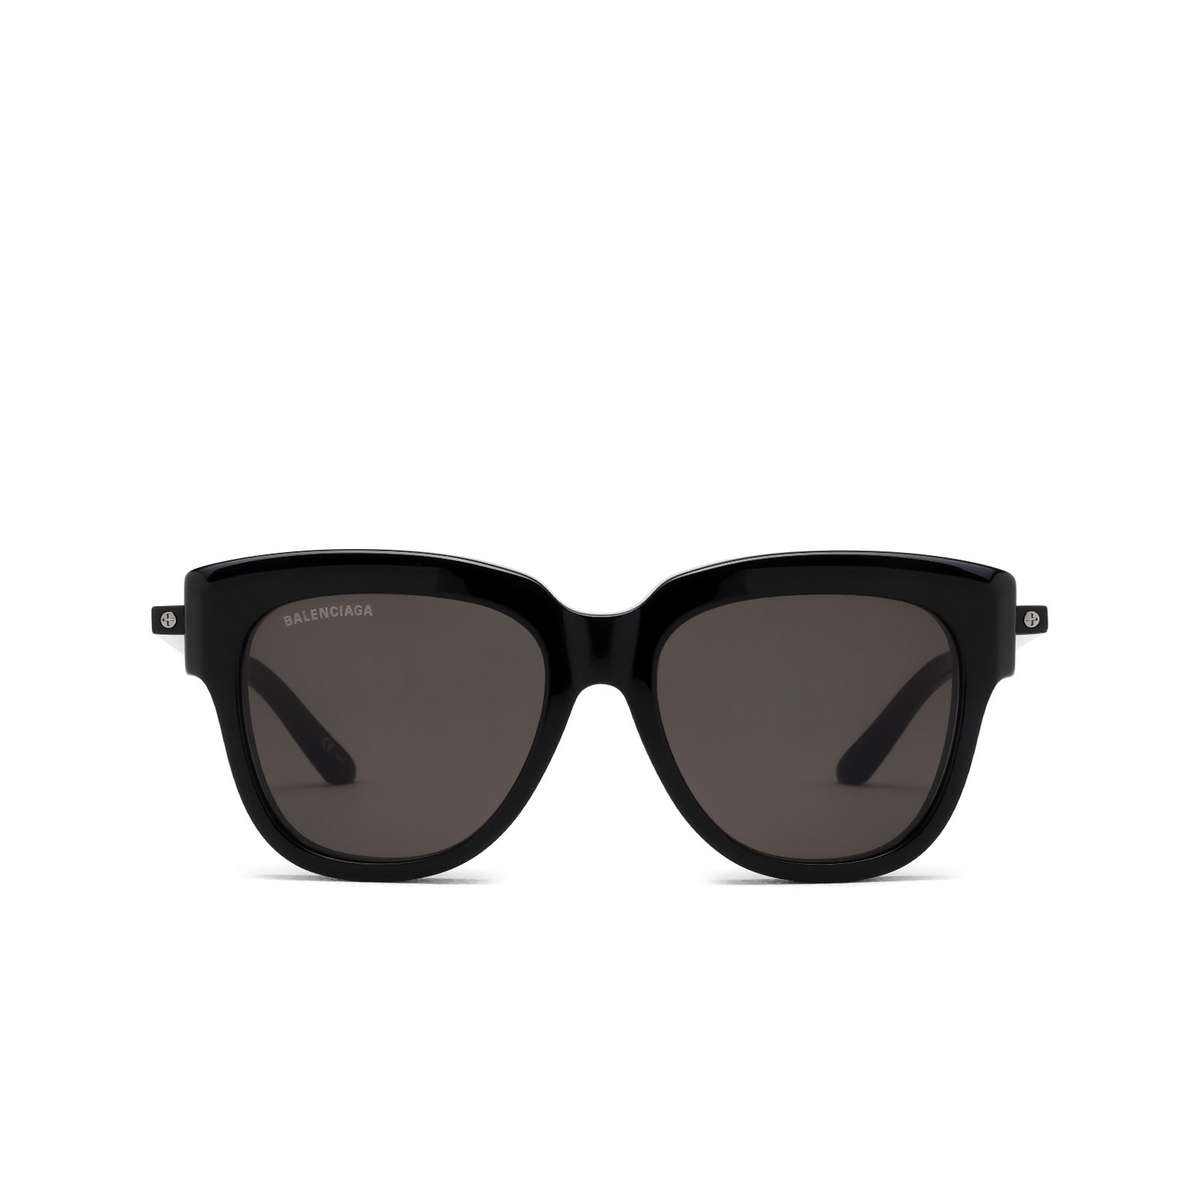 Balenciaga® Square Sunglasses: BB0160S color Black 001 - front view.